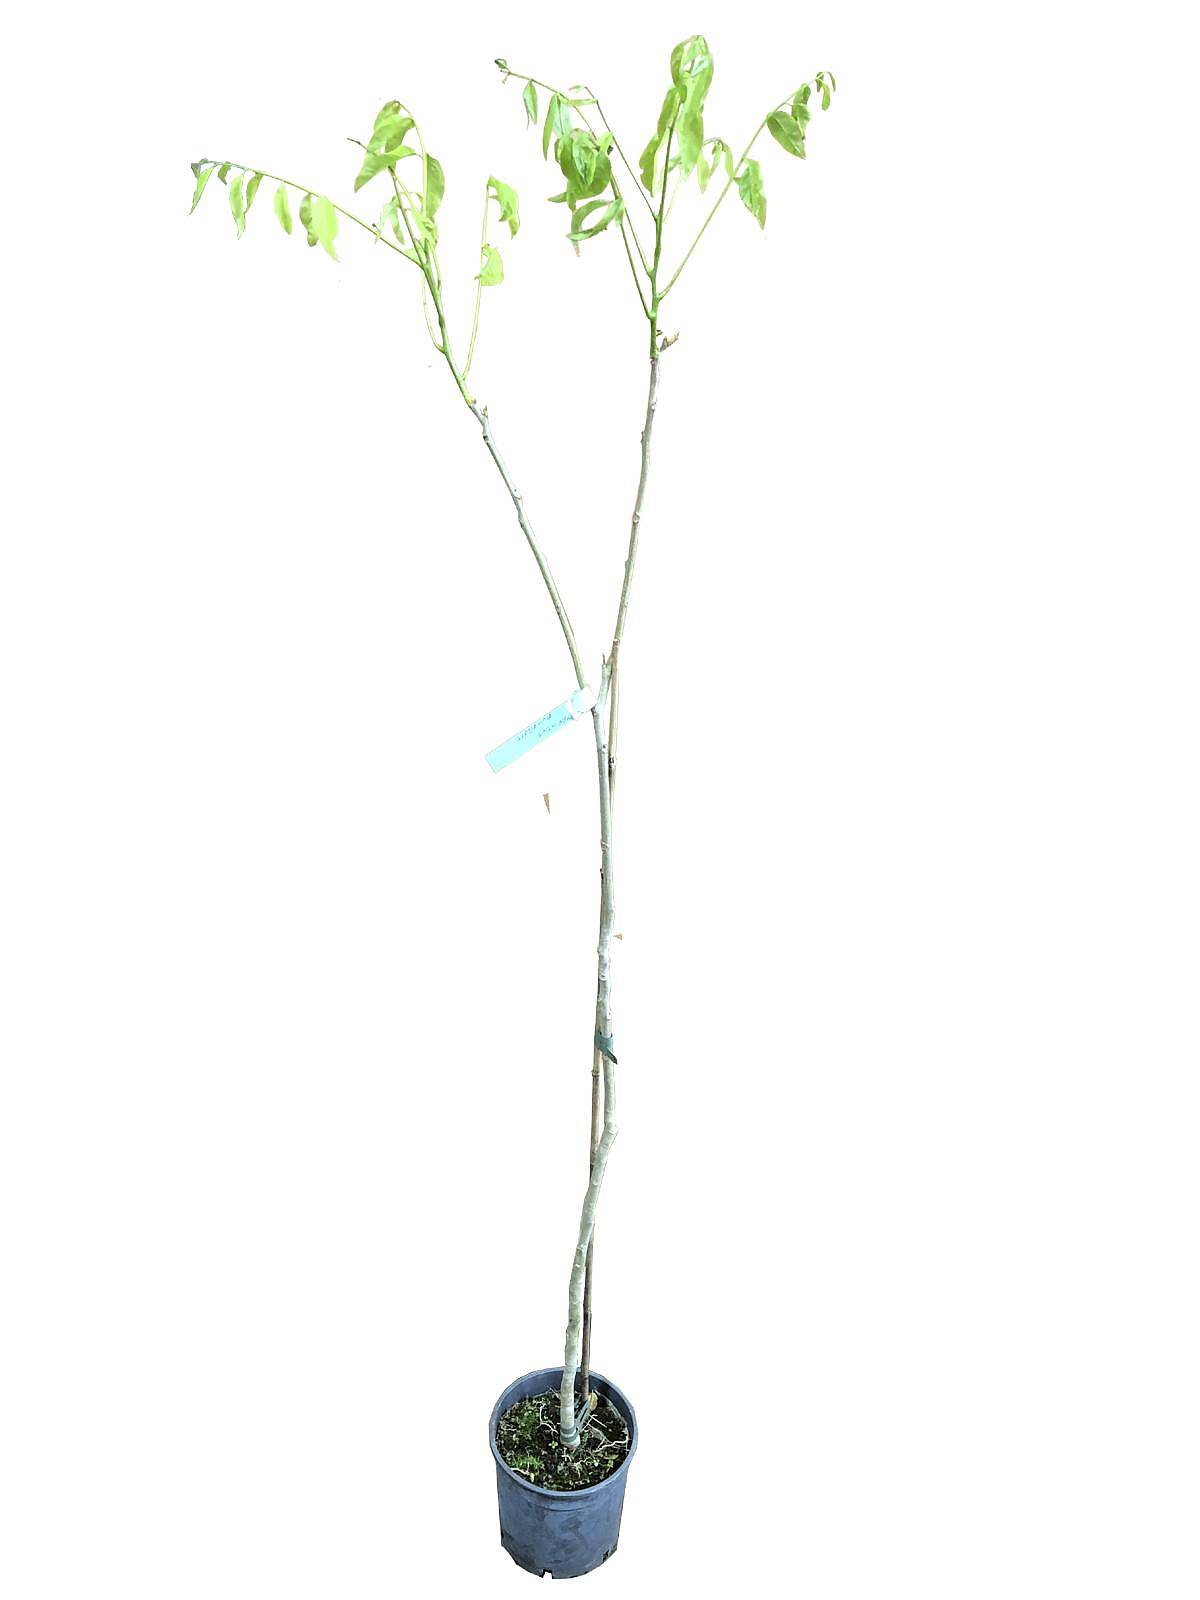 Мыльное дерево, или Сапиндус - Sapindus D18 H140